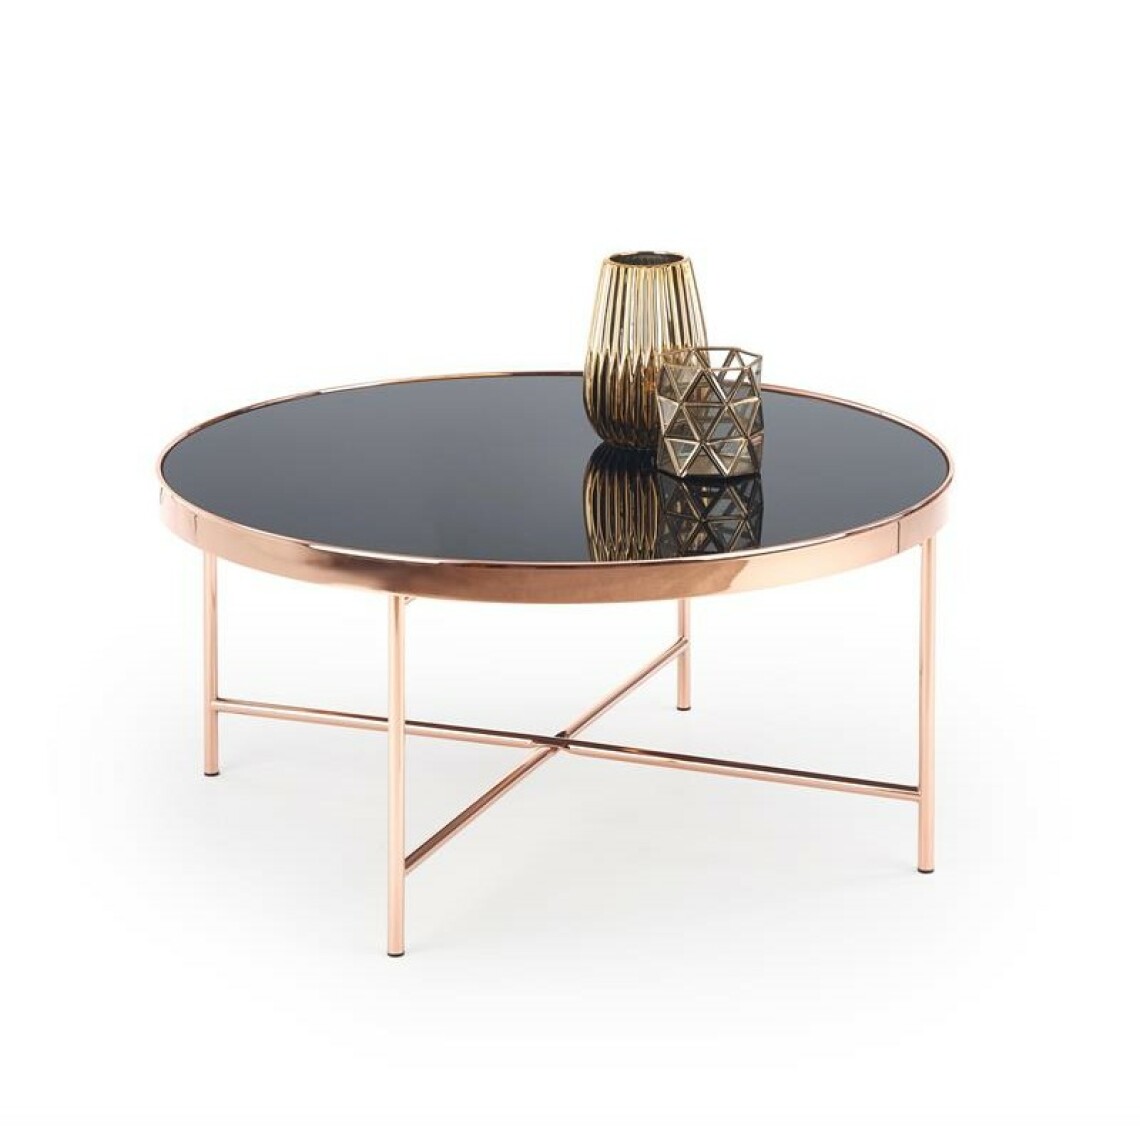 Carellia - Table basse ronde design 82 cm x 40 cm - Noir/Cuivre - Tables basses